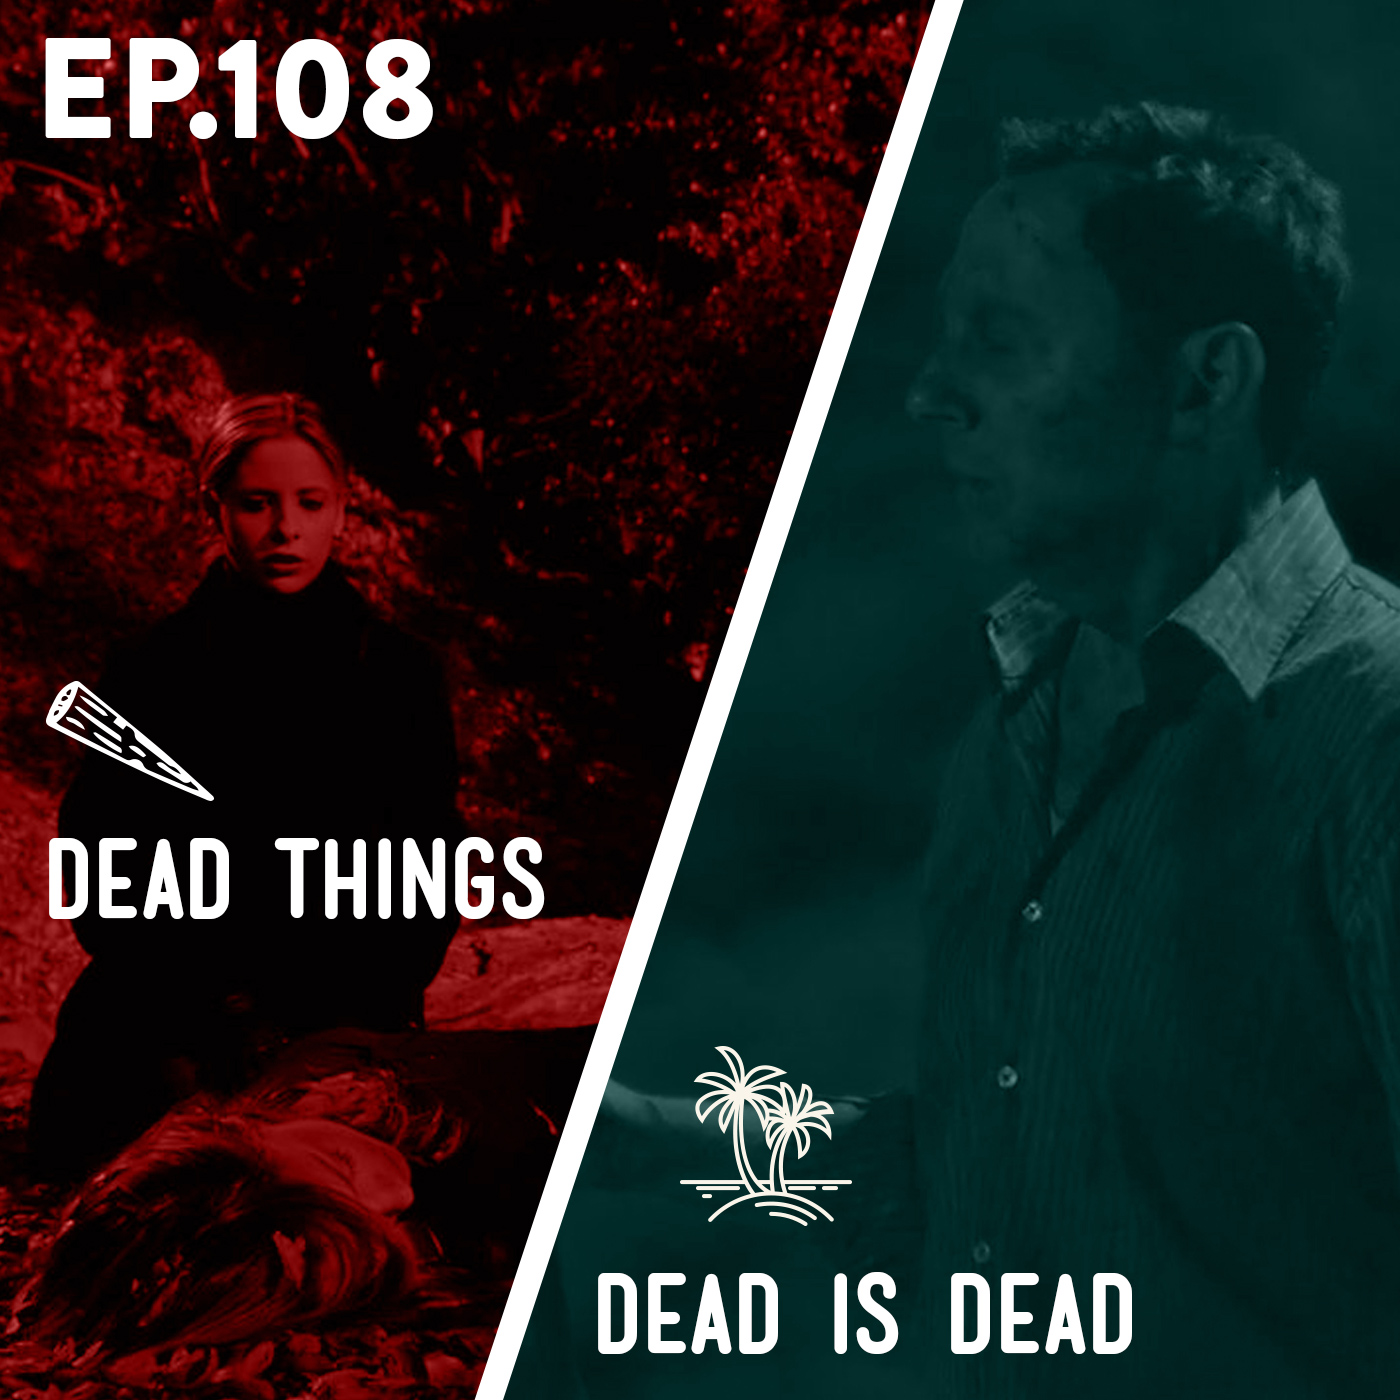 108 - Dead Things / Dead is Dead